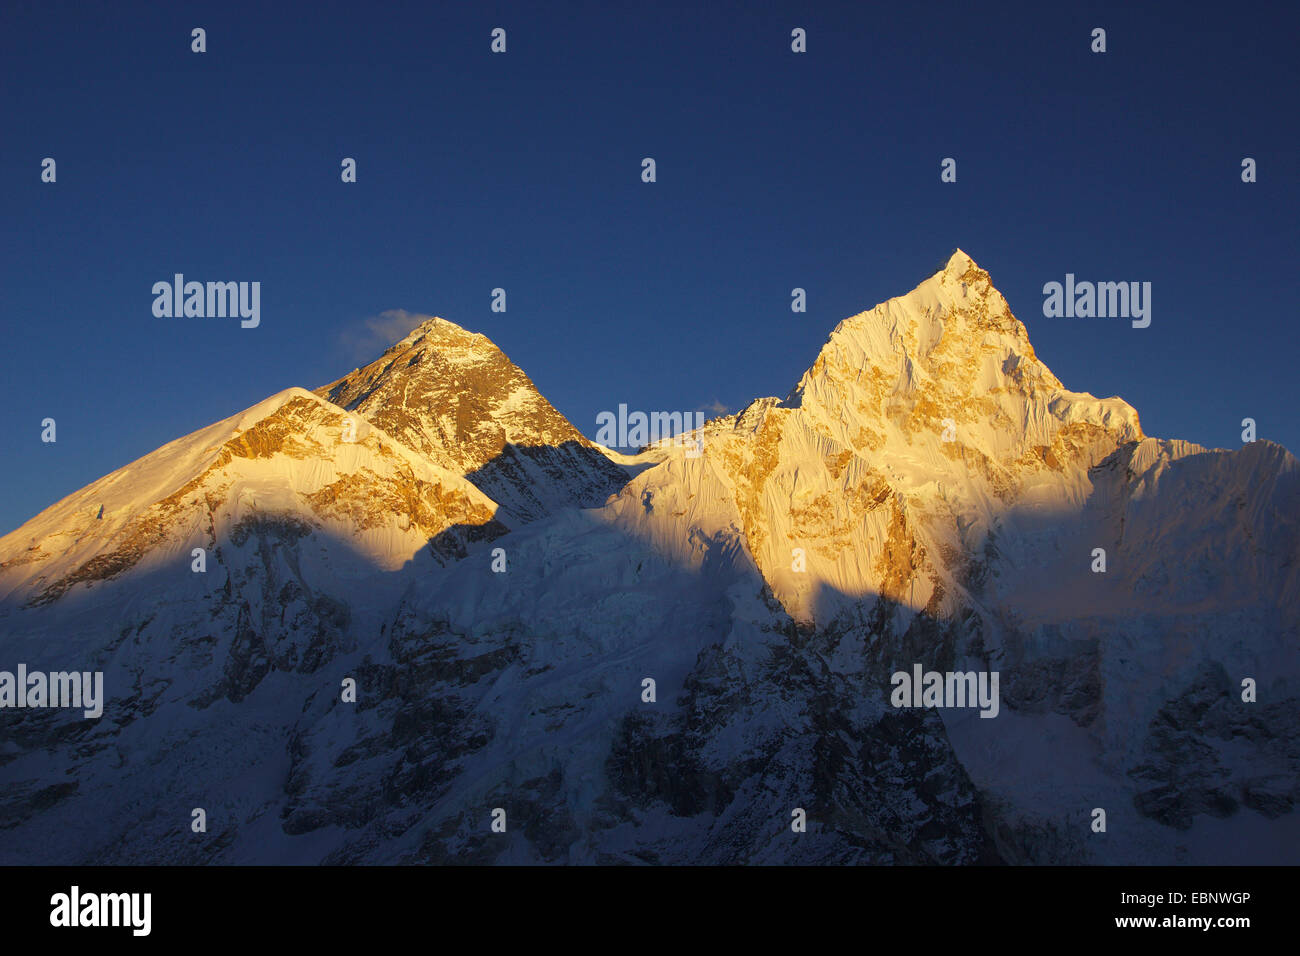 Monte Everest izquierdo frente al oeste del hombro) y Nuptse en luz del atardecer. Vista desde el Kala Patthar, Nepal, Himalaya, Khumbu Himal Foto de stock